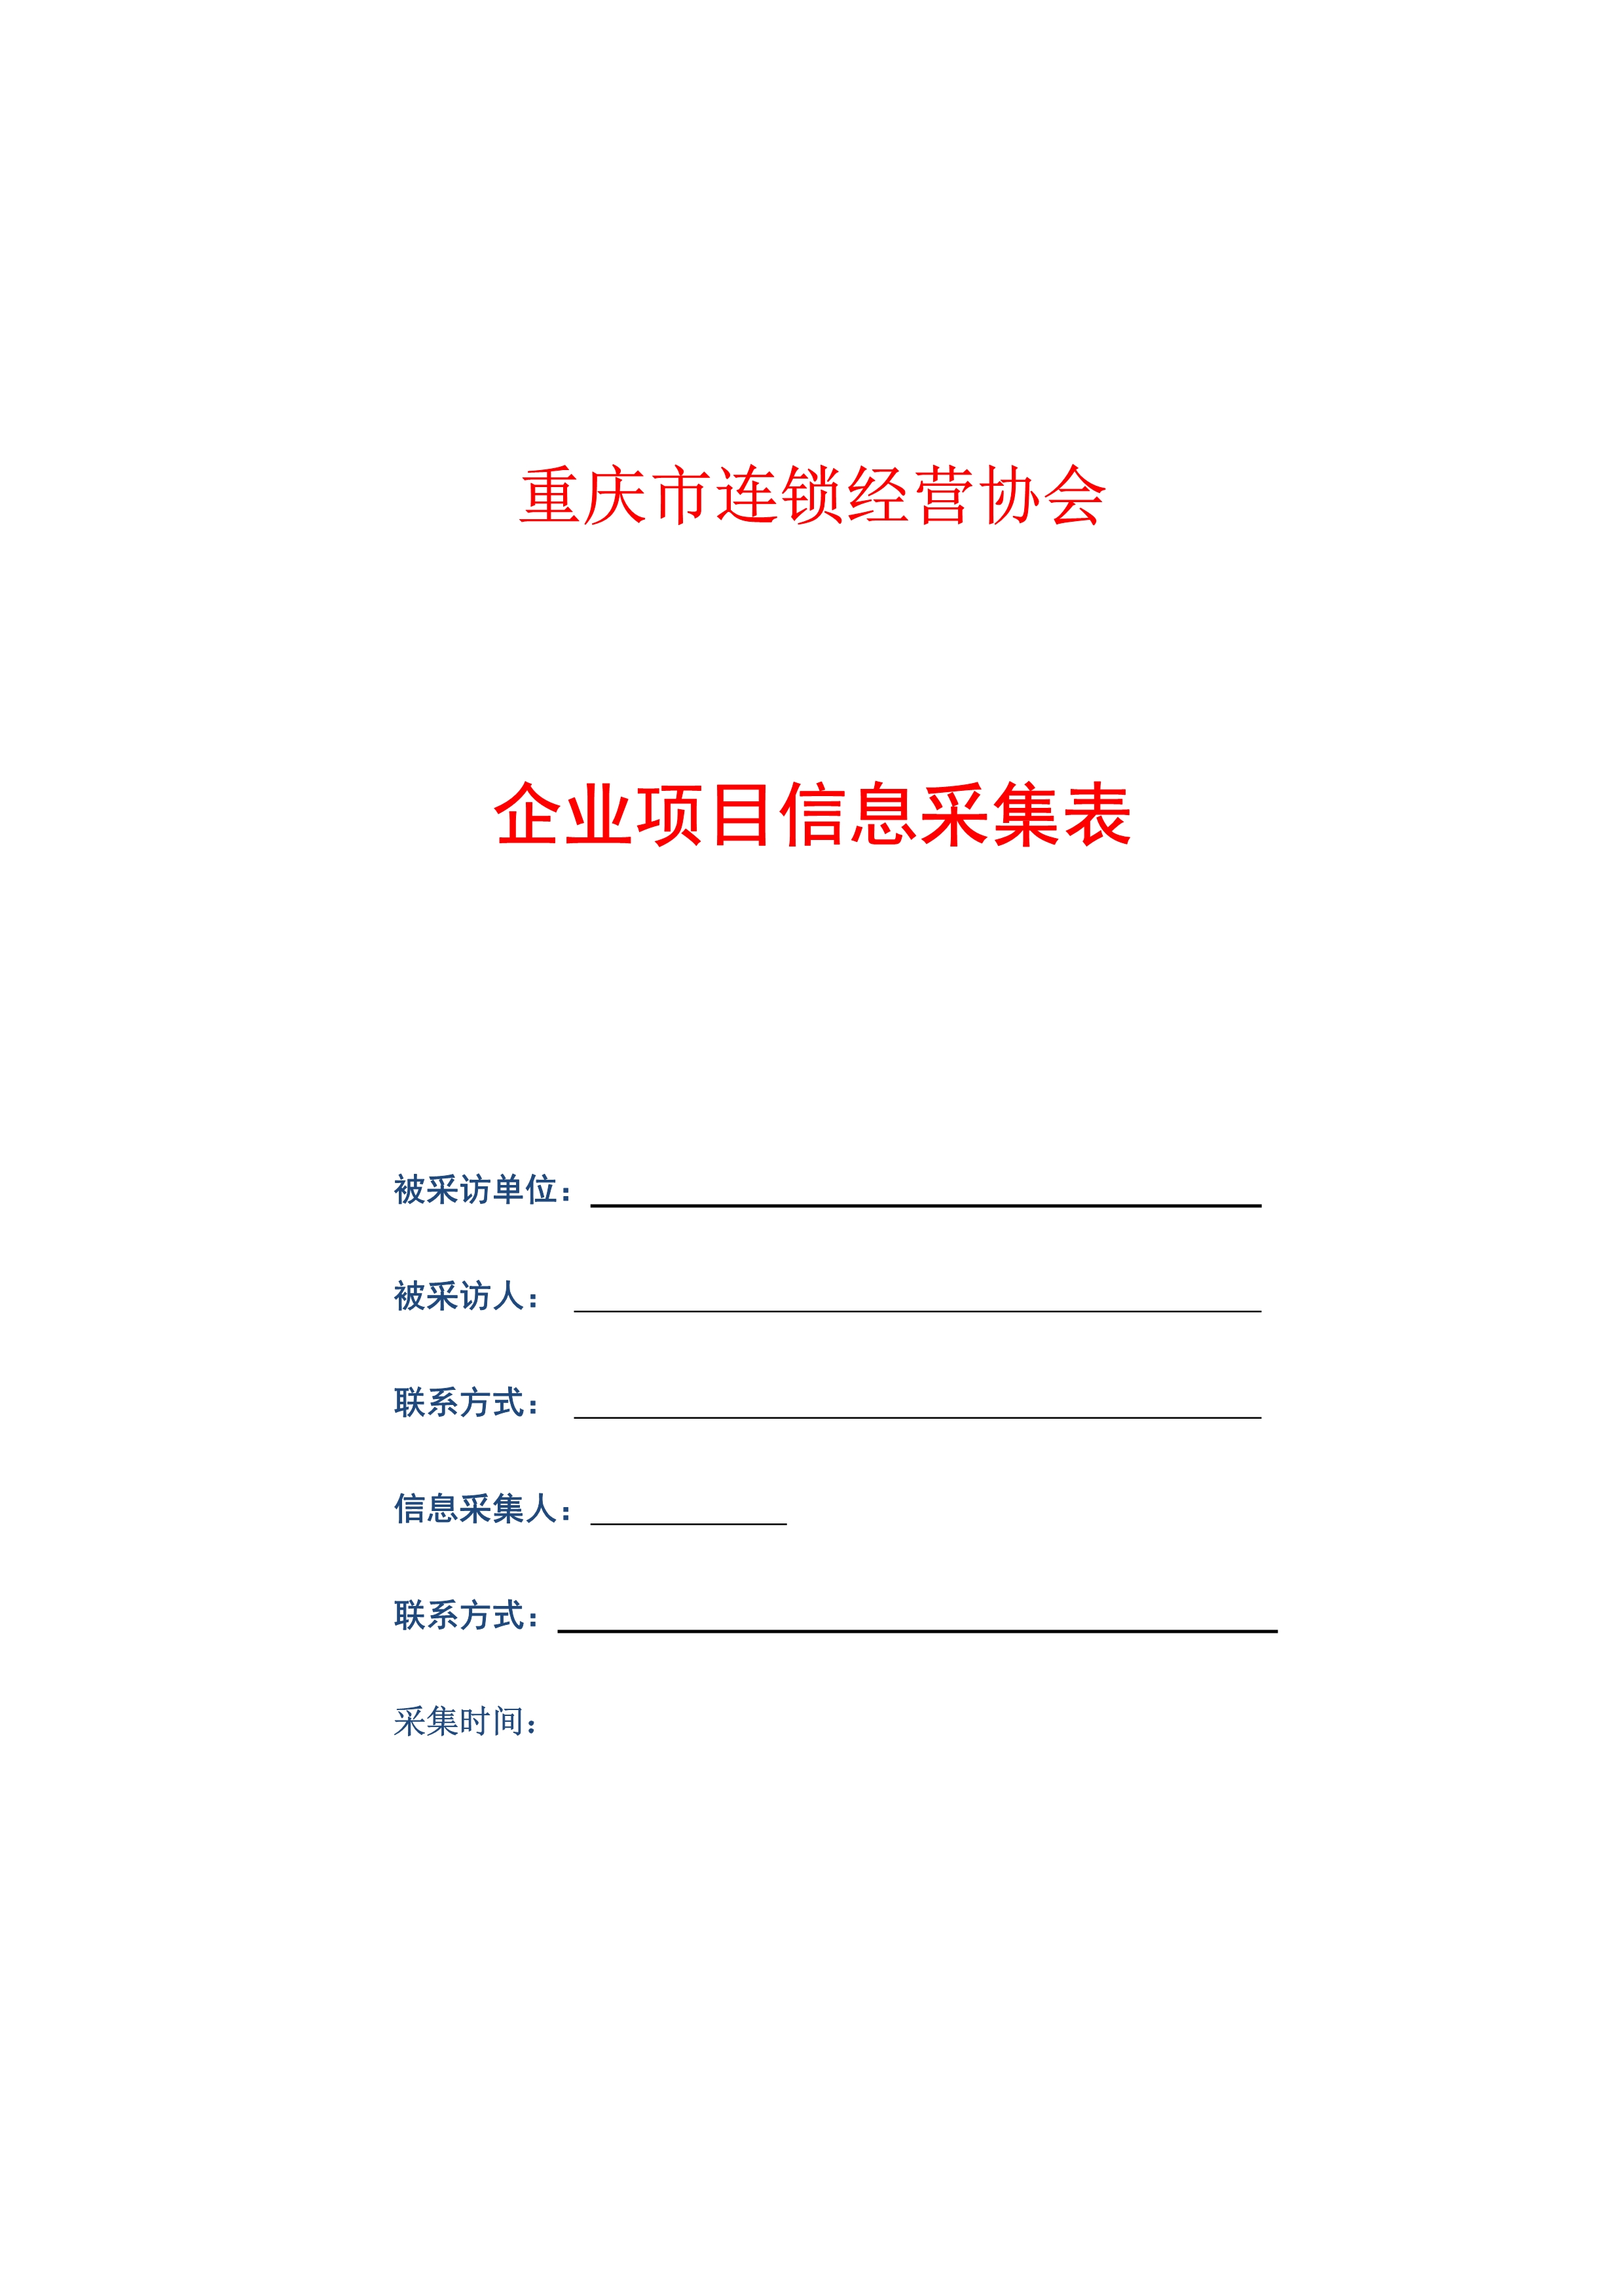 重庆市连锁经营协会企业项目信息采集表